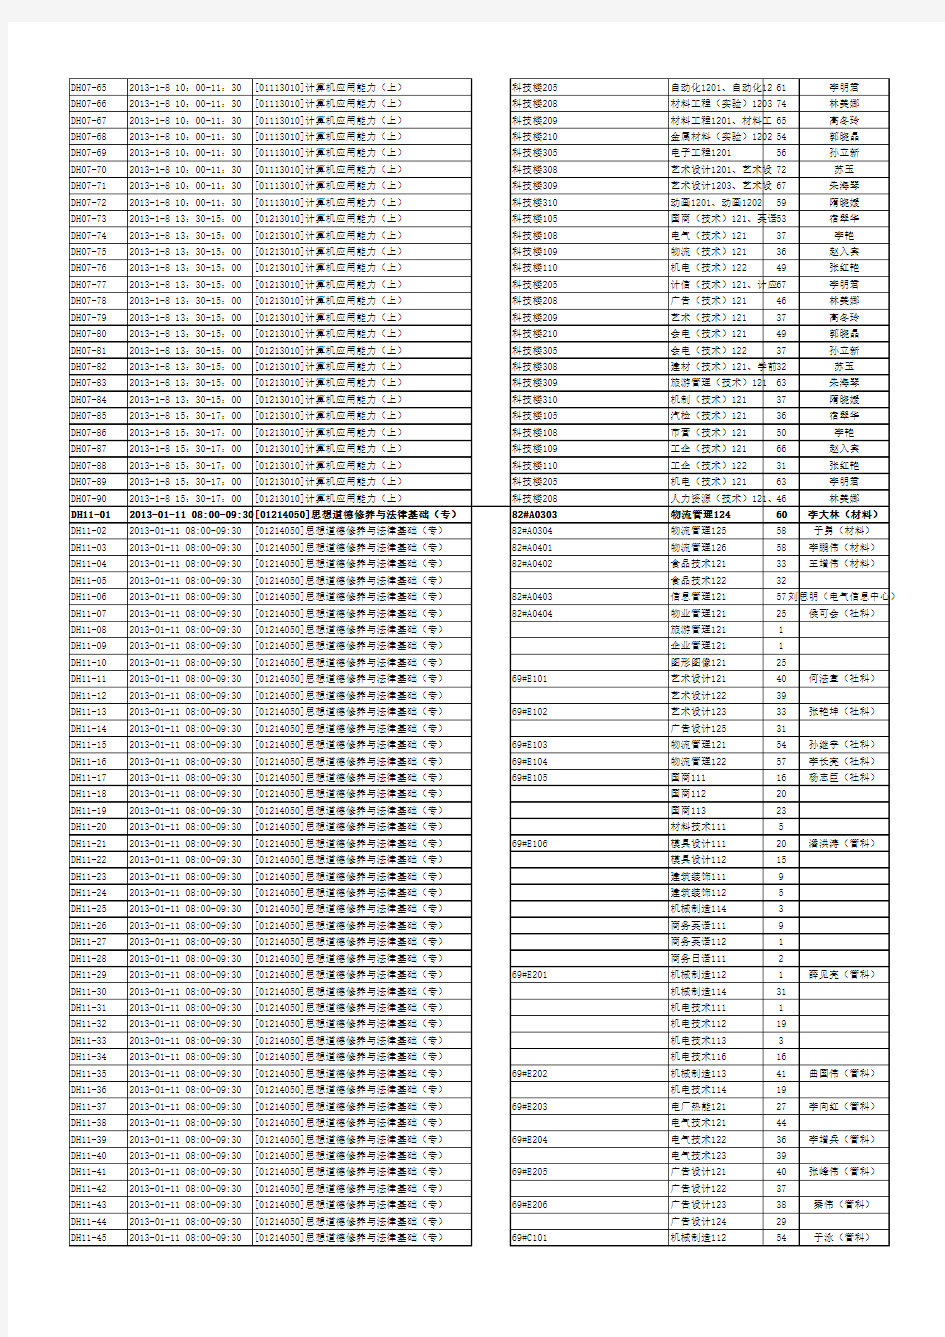 (新库)2012-2013-01学期-期末考试安排,公共课、选修课